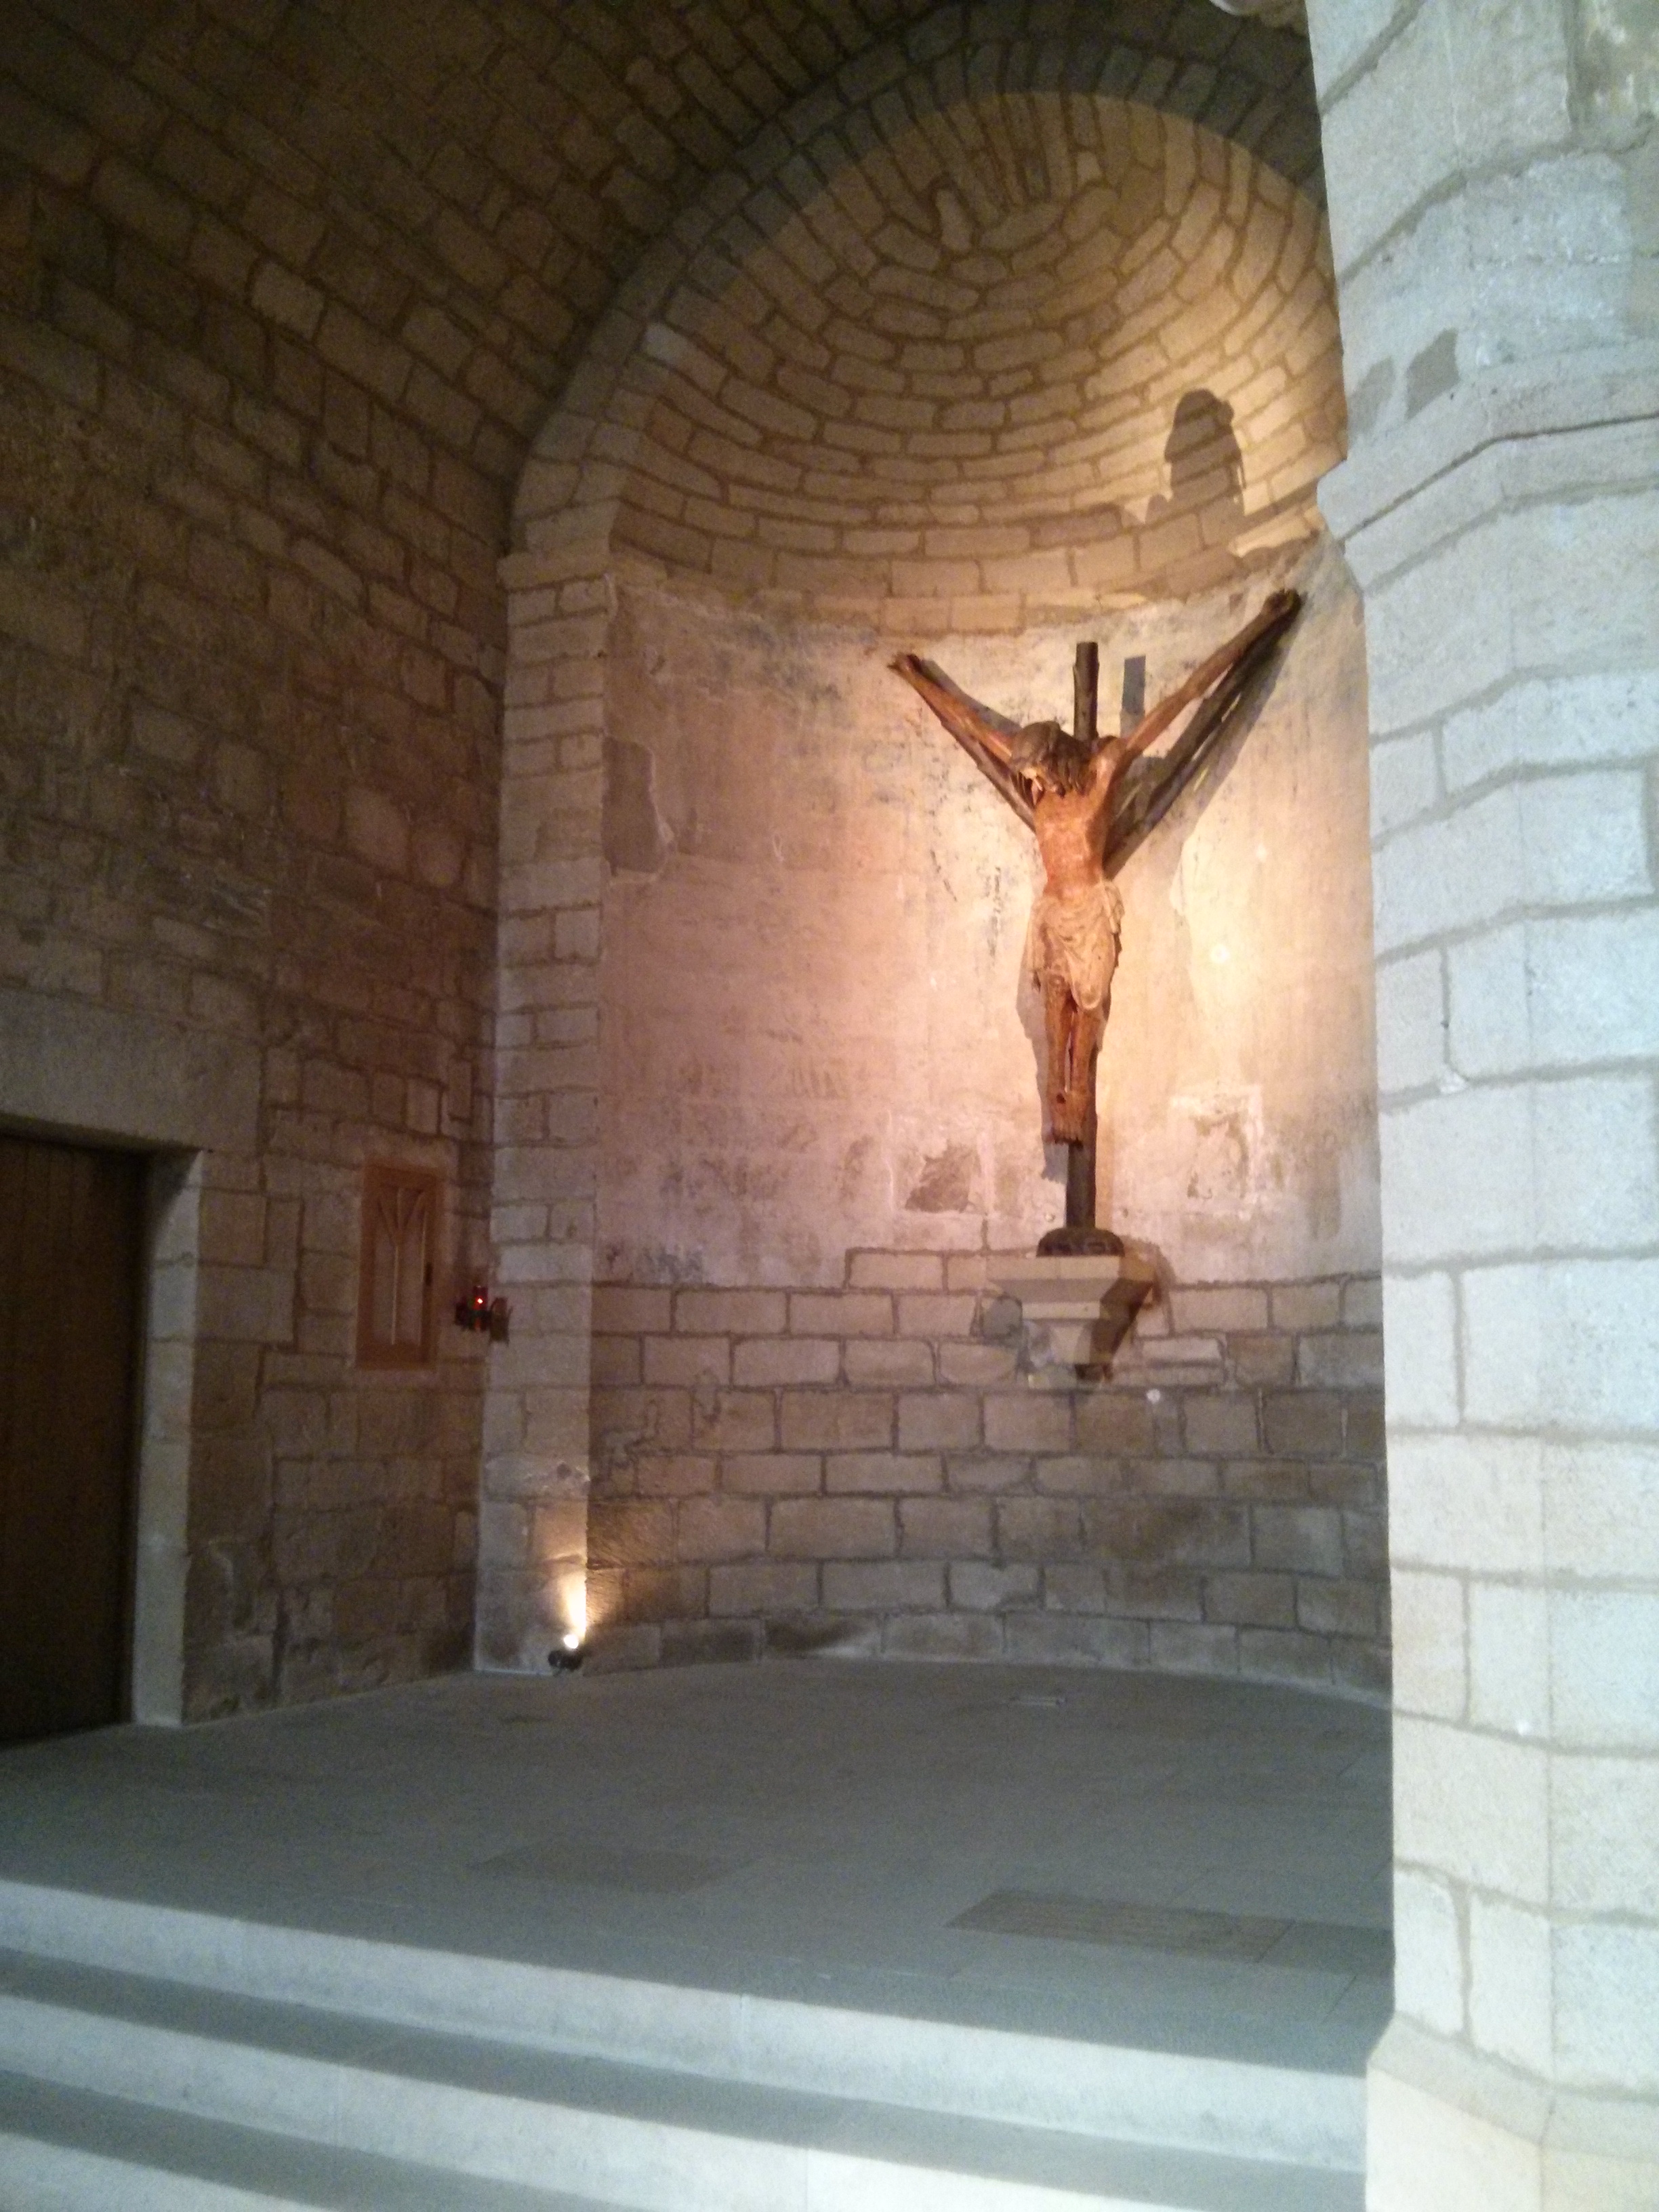  Imagen del Cristo en la iglesia del Crucifijo (fotografía cedida en Flickr por Antonio Periago Miñarro)